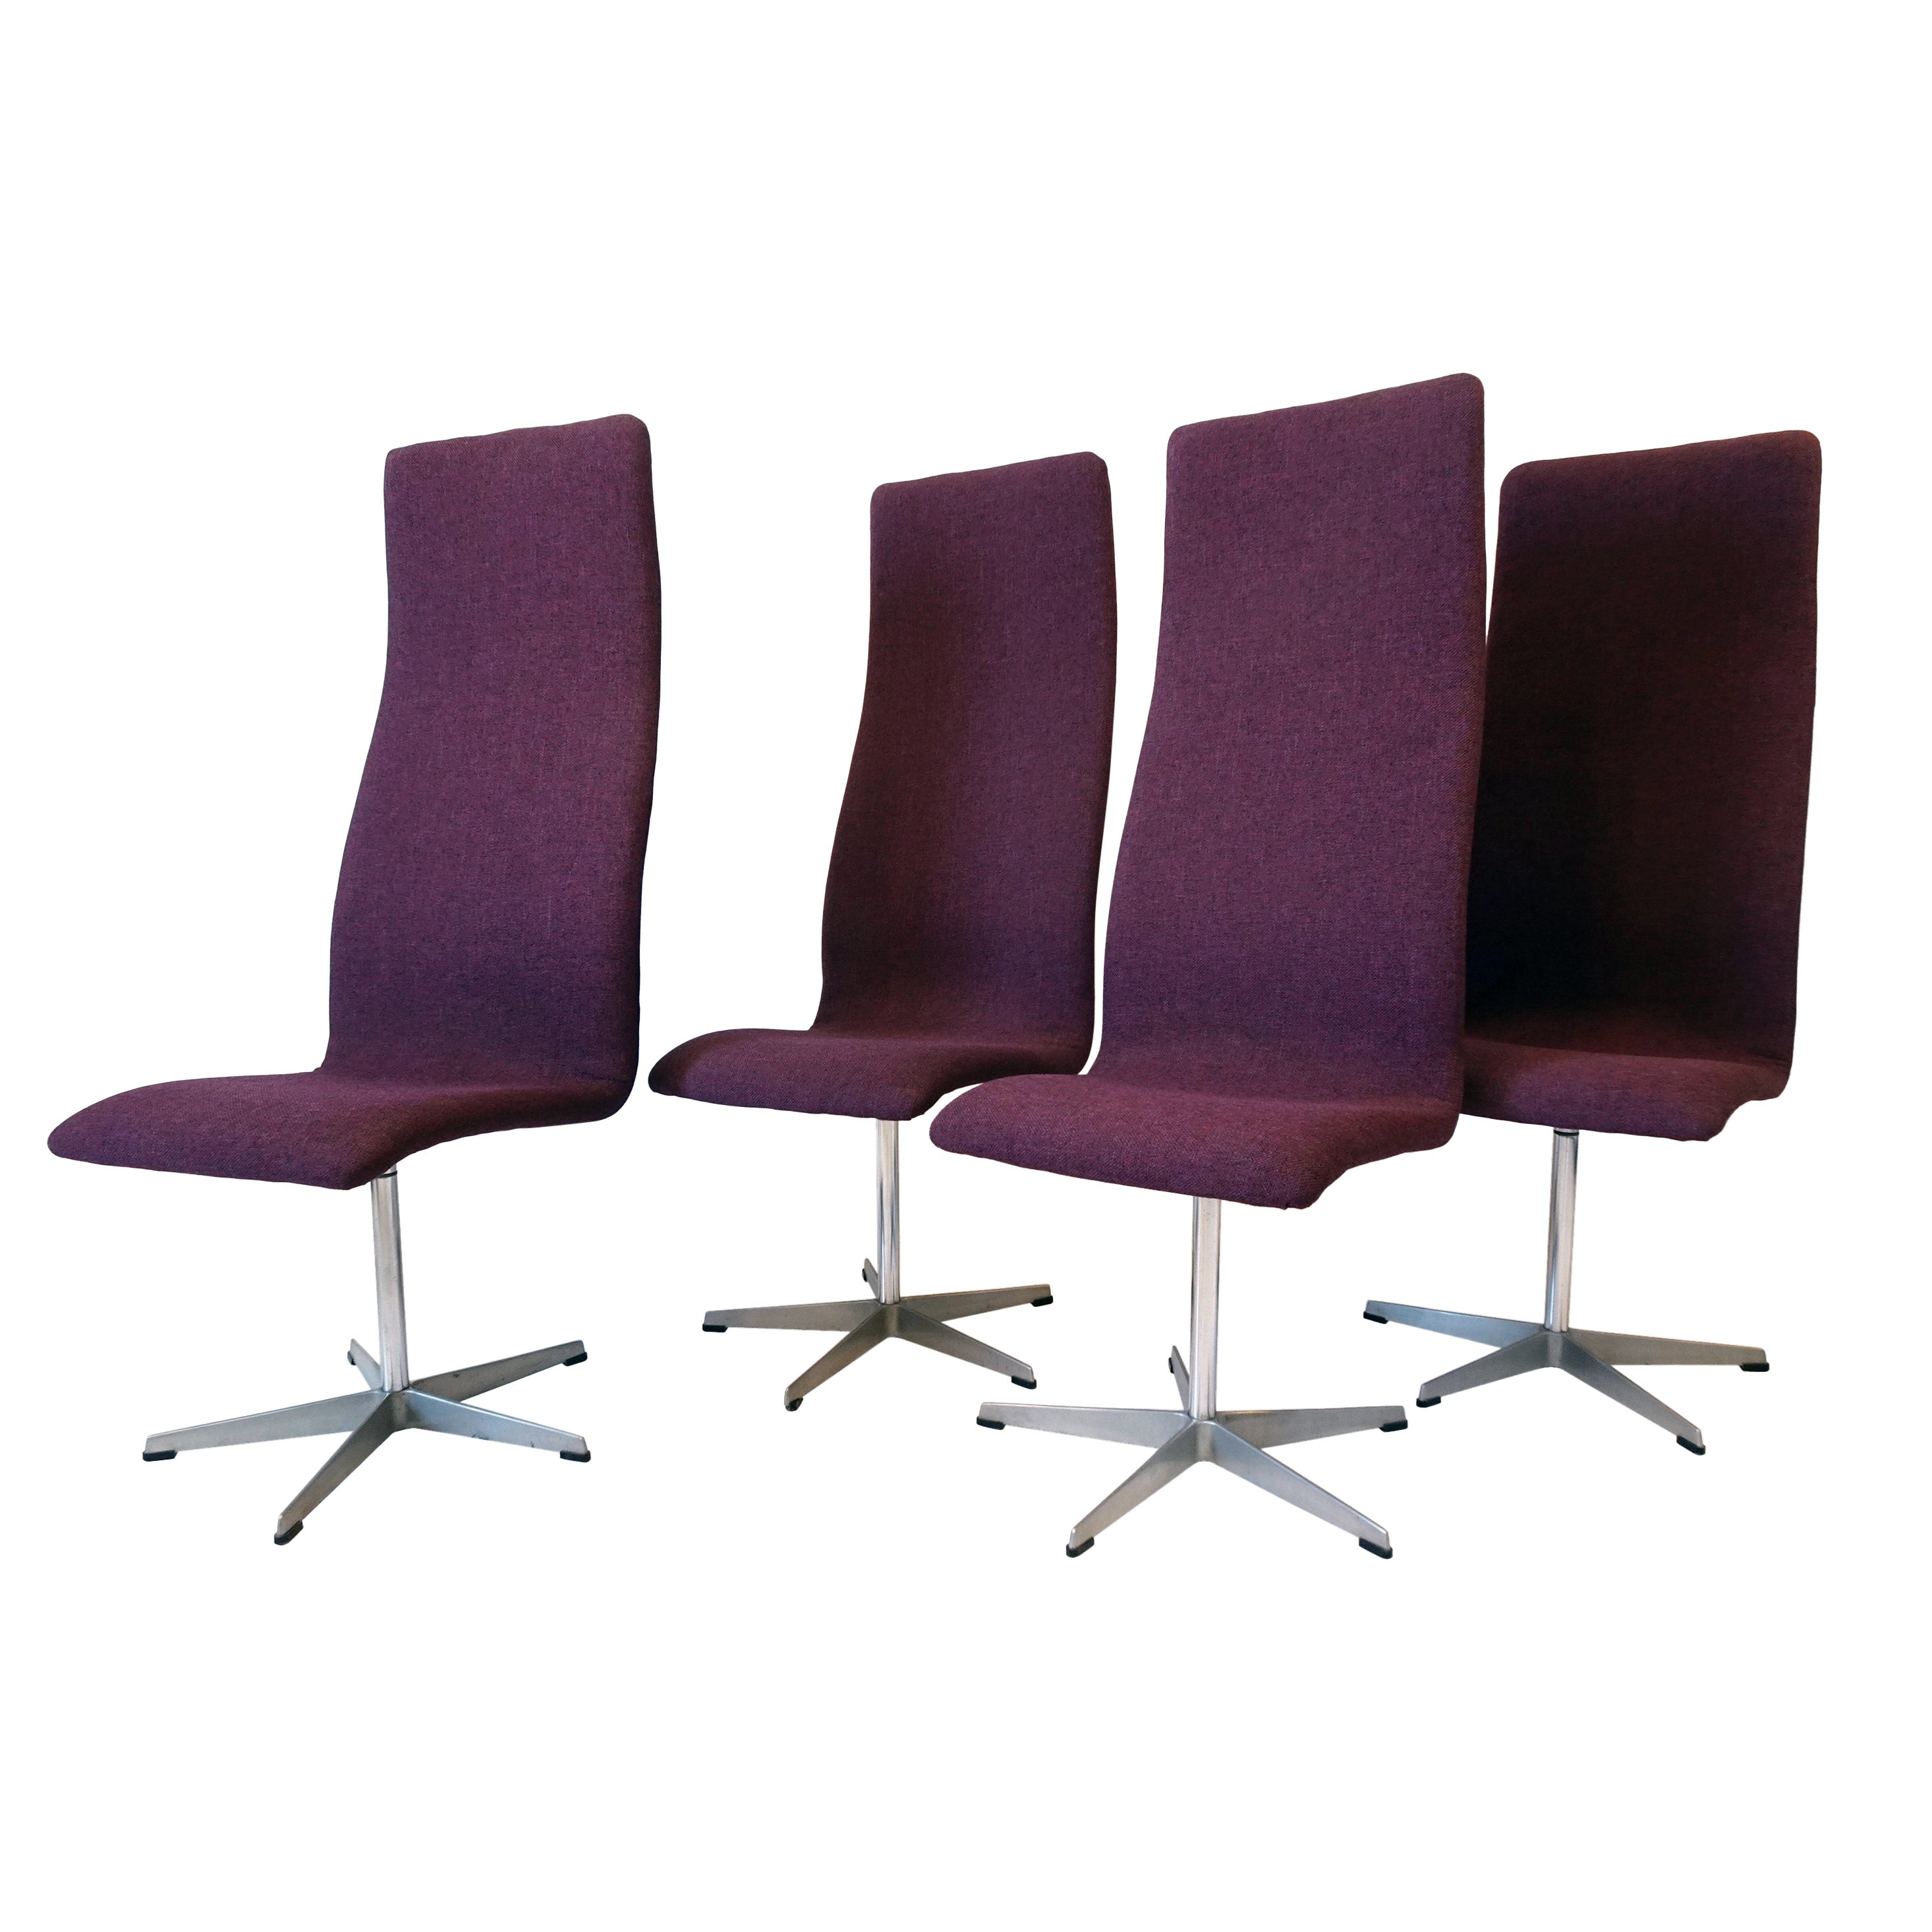 4 Arne Jacobsen Swiveling Oxford Dining Chairs, Denmark